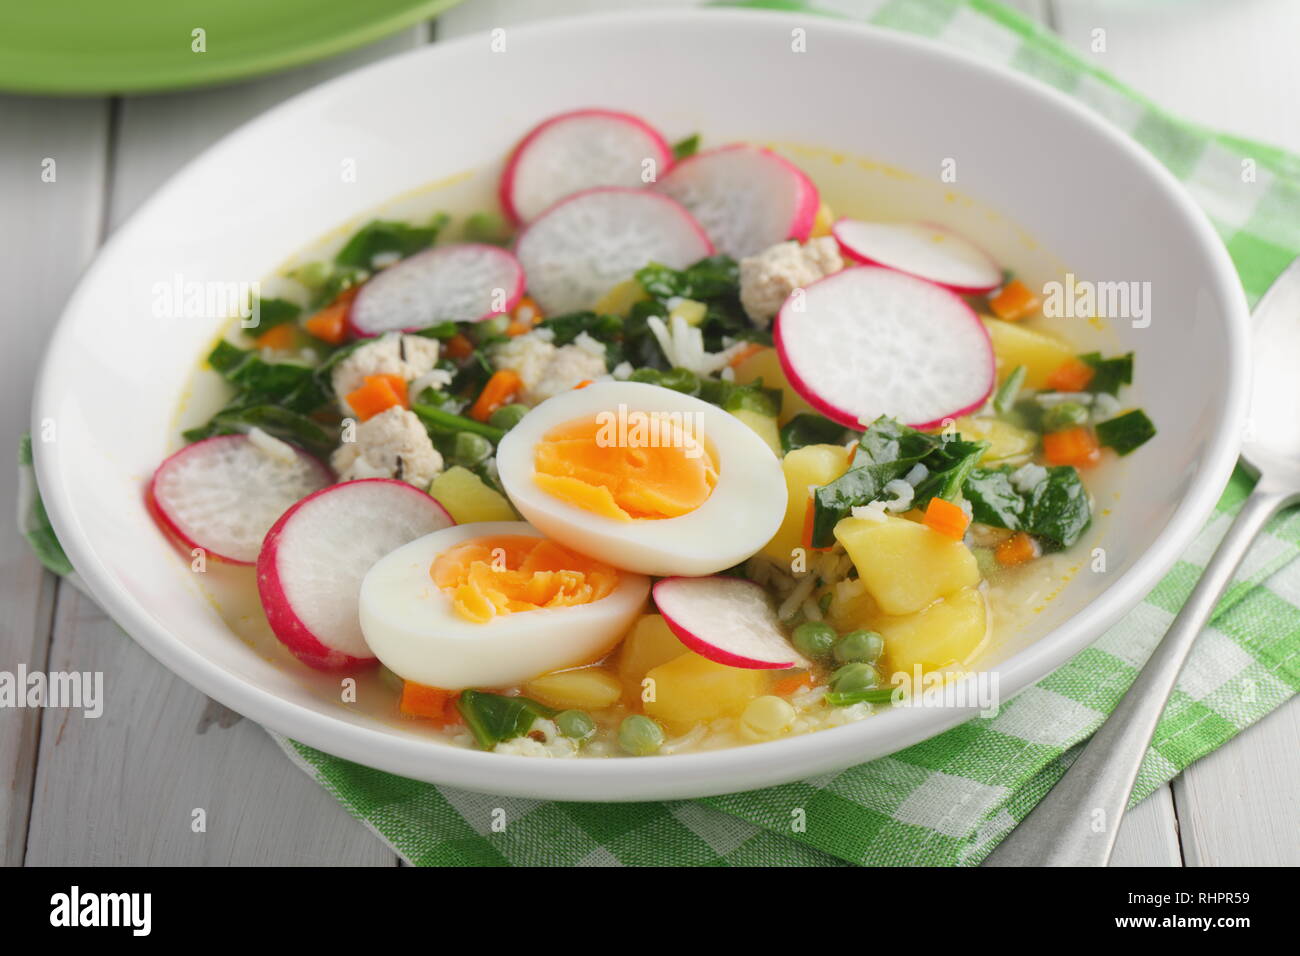 Soupe de printemps aux épinards, pomme de terre, carotte, chou-fleur, radis, petits pois et oeuf dur Banque D'Images